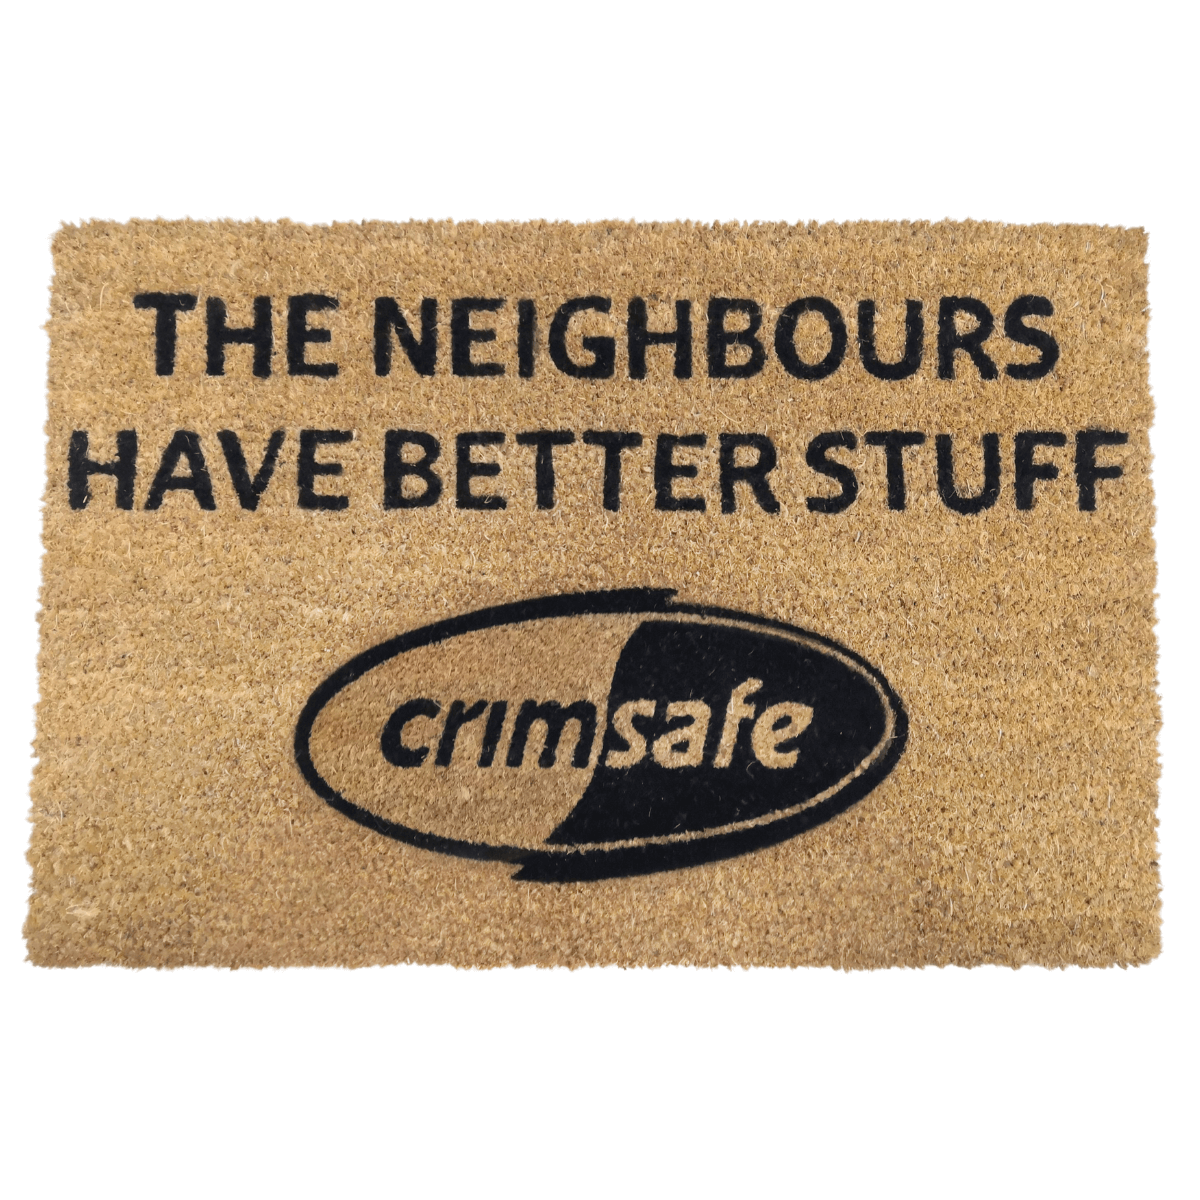 Crimsafe doormat - The neighbours have better stuff